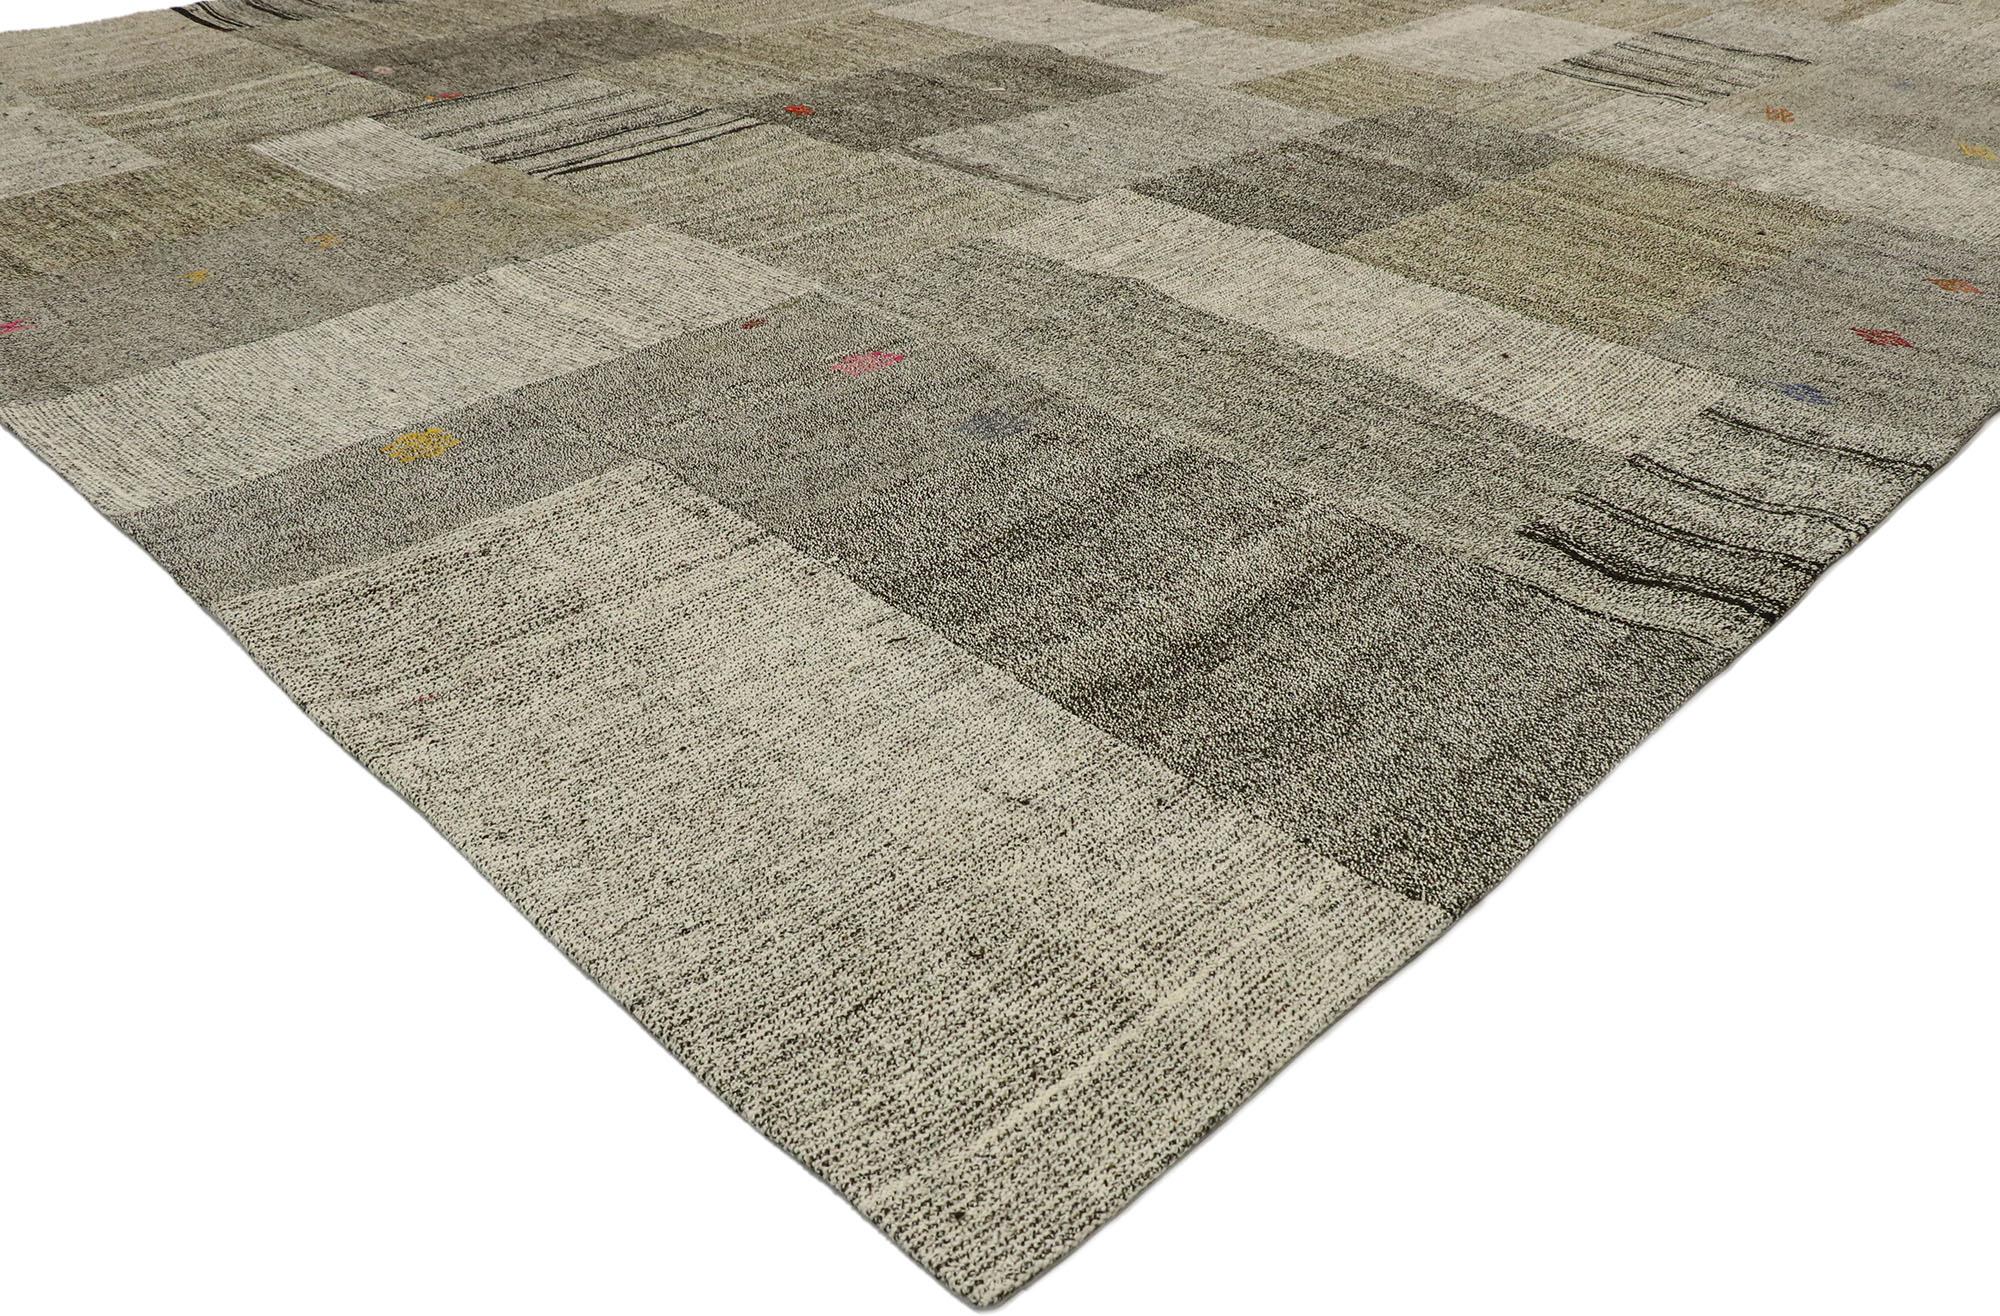 53167, türkischer Patchwork-Kilim-Teppich im skandinavisch-modernen Stil. Dieser handgewebte türkische Patchwork-Kilim mit ausgewogener Asymmetrie und schlichter Designästhetik verleiht einem warmen, entspannten Raum Textur und einen subtilen